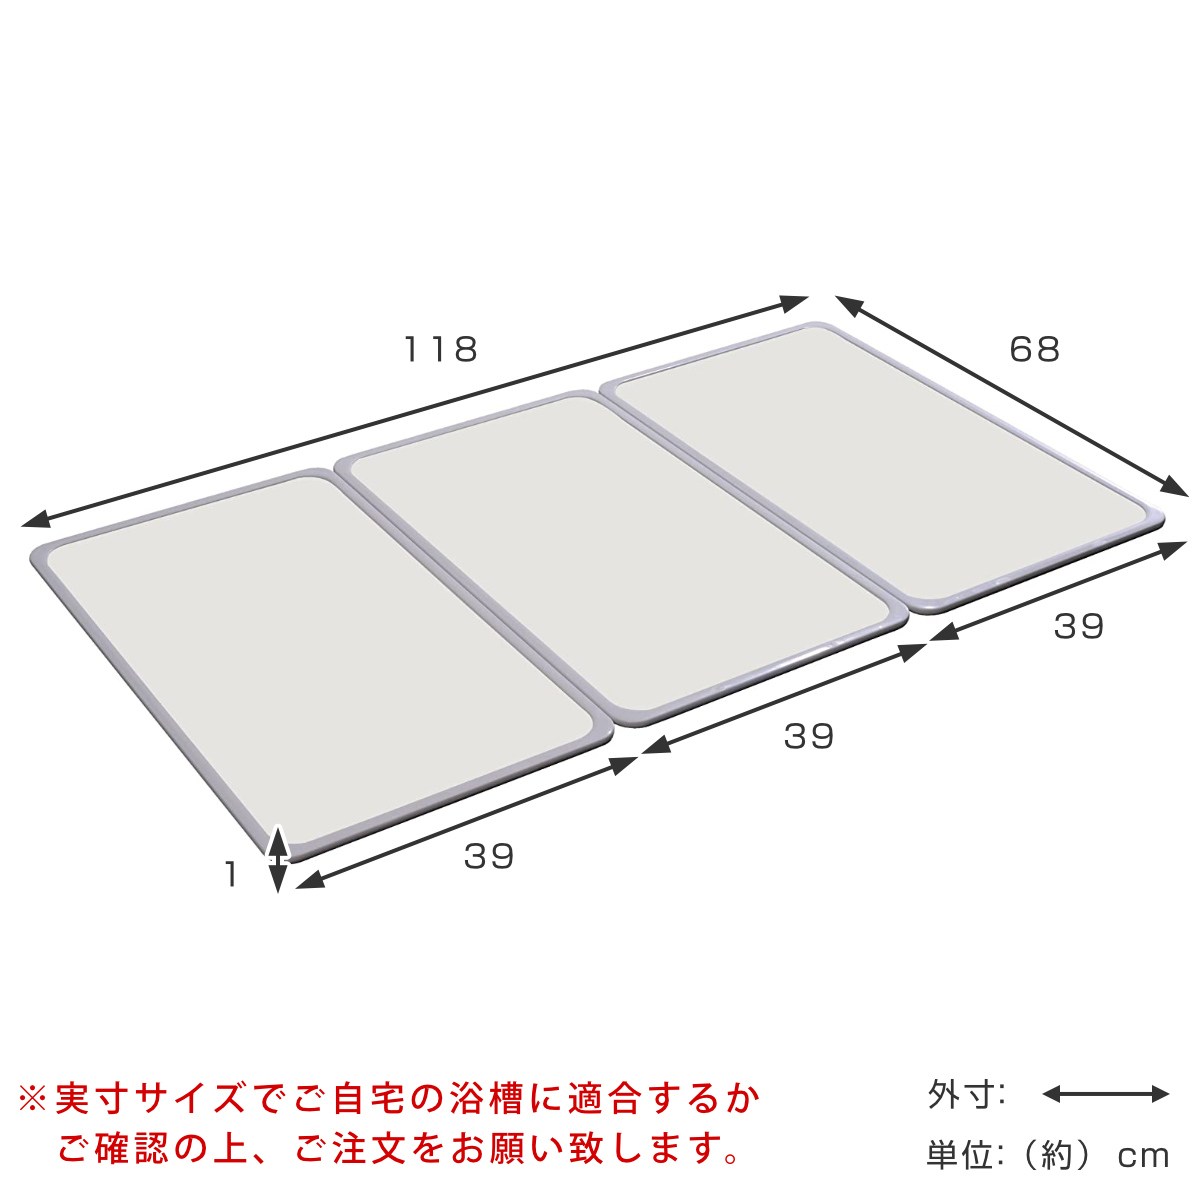 特典付き 抗菌 風呂ふた 組み合わせ 70×120cm 用 M12 3枚組 日本製